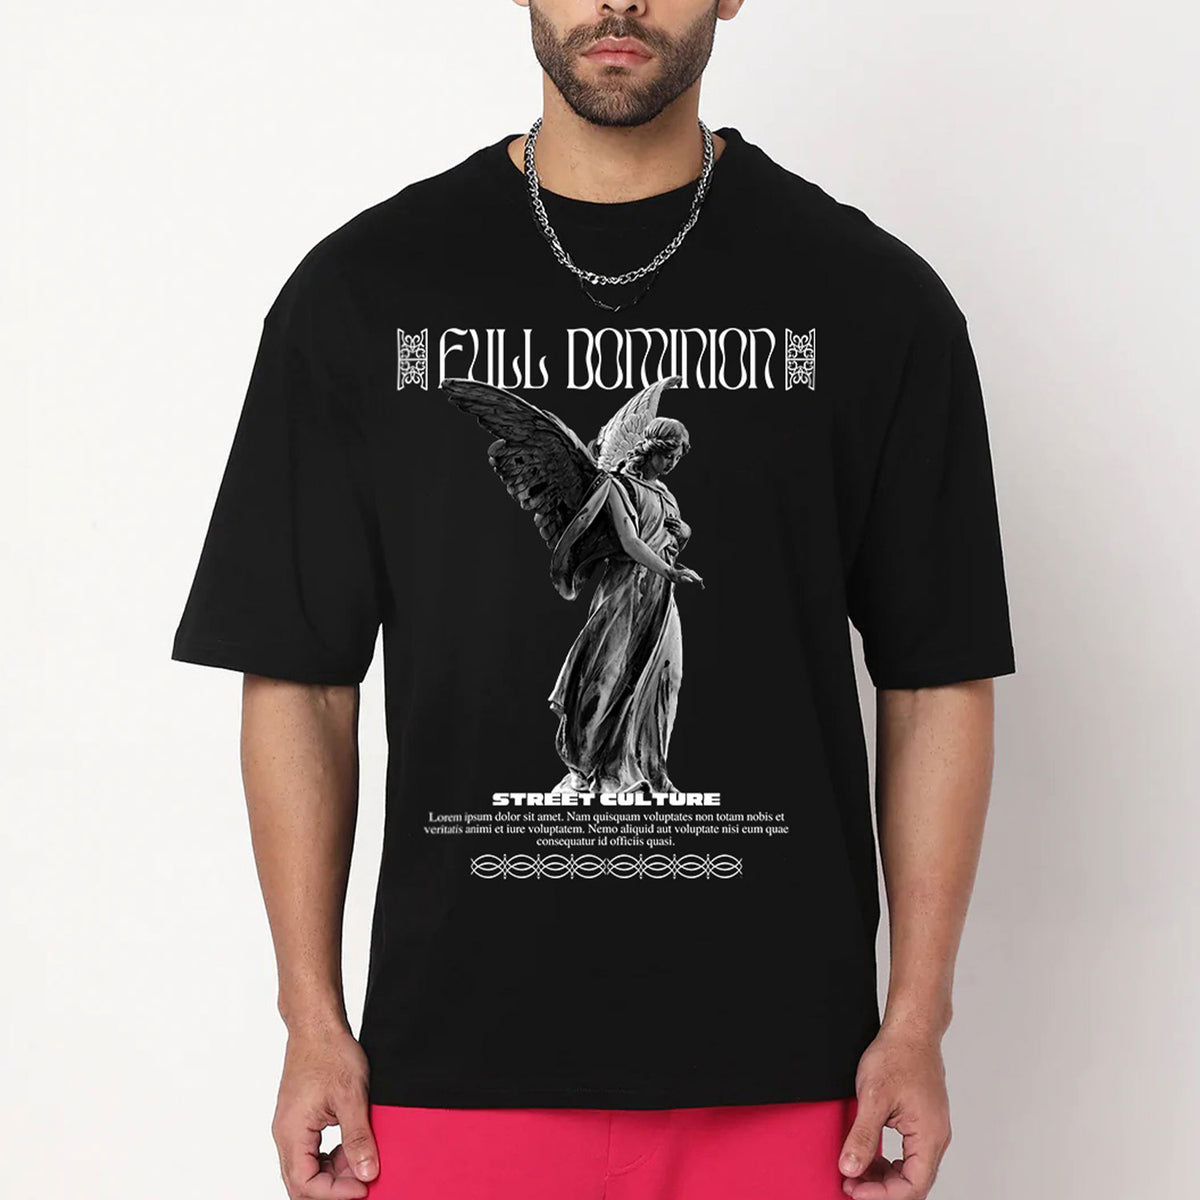 Men's Black Full Dominion Oversized Printed T-shirt